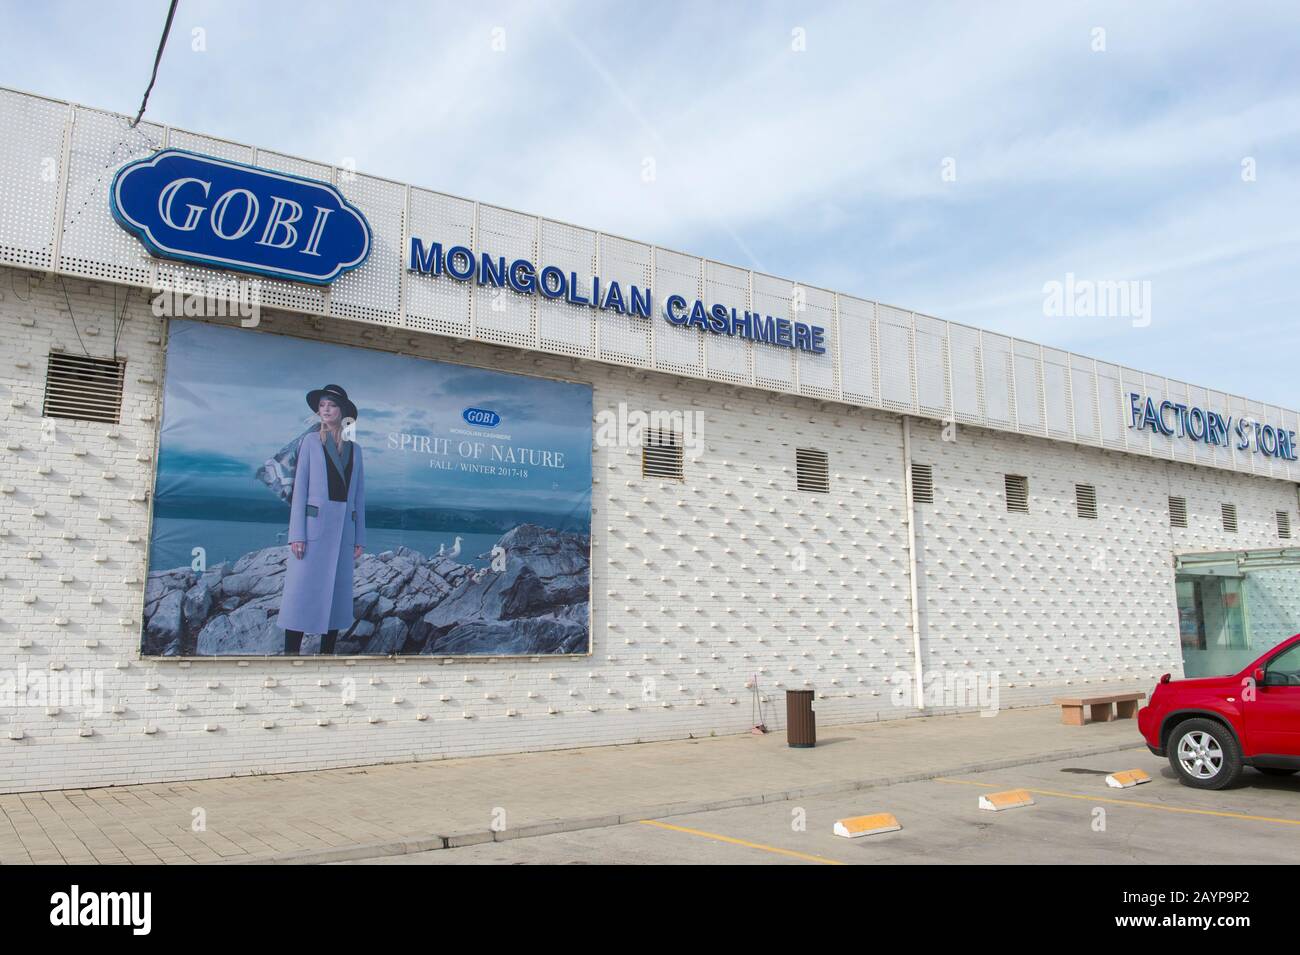 Mongolian cashmere immagini e fotografie stock ad alta risoluzione - Alamy